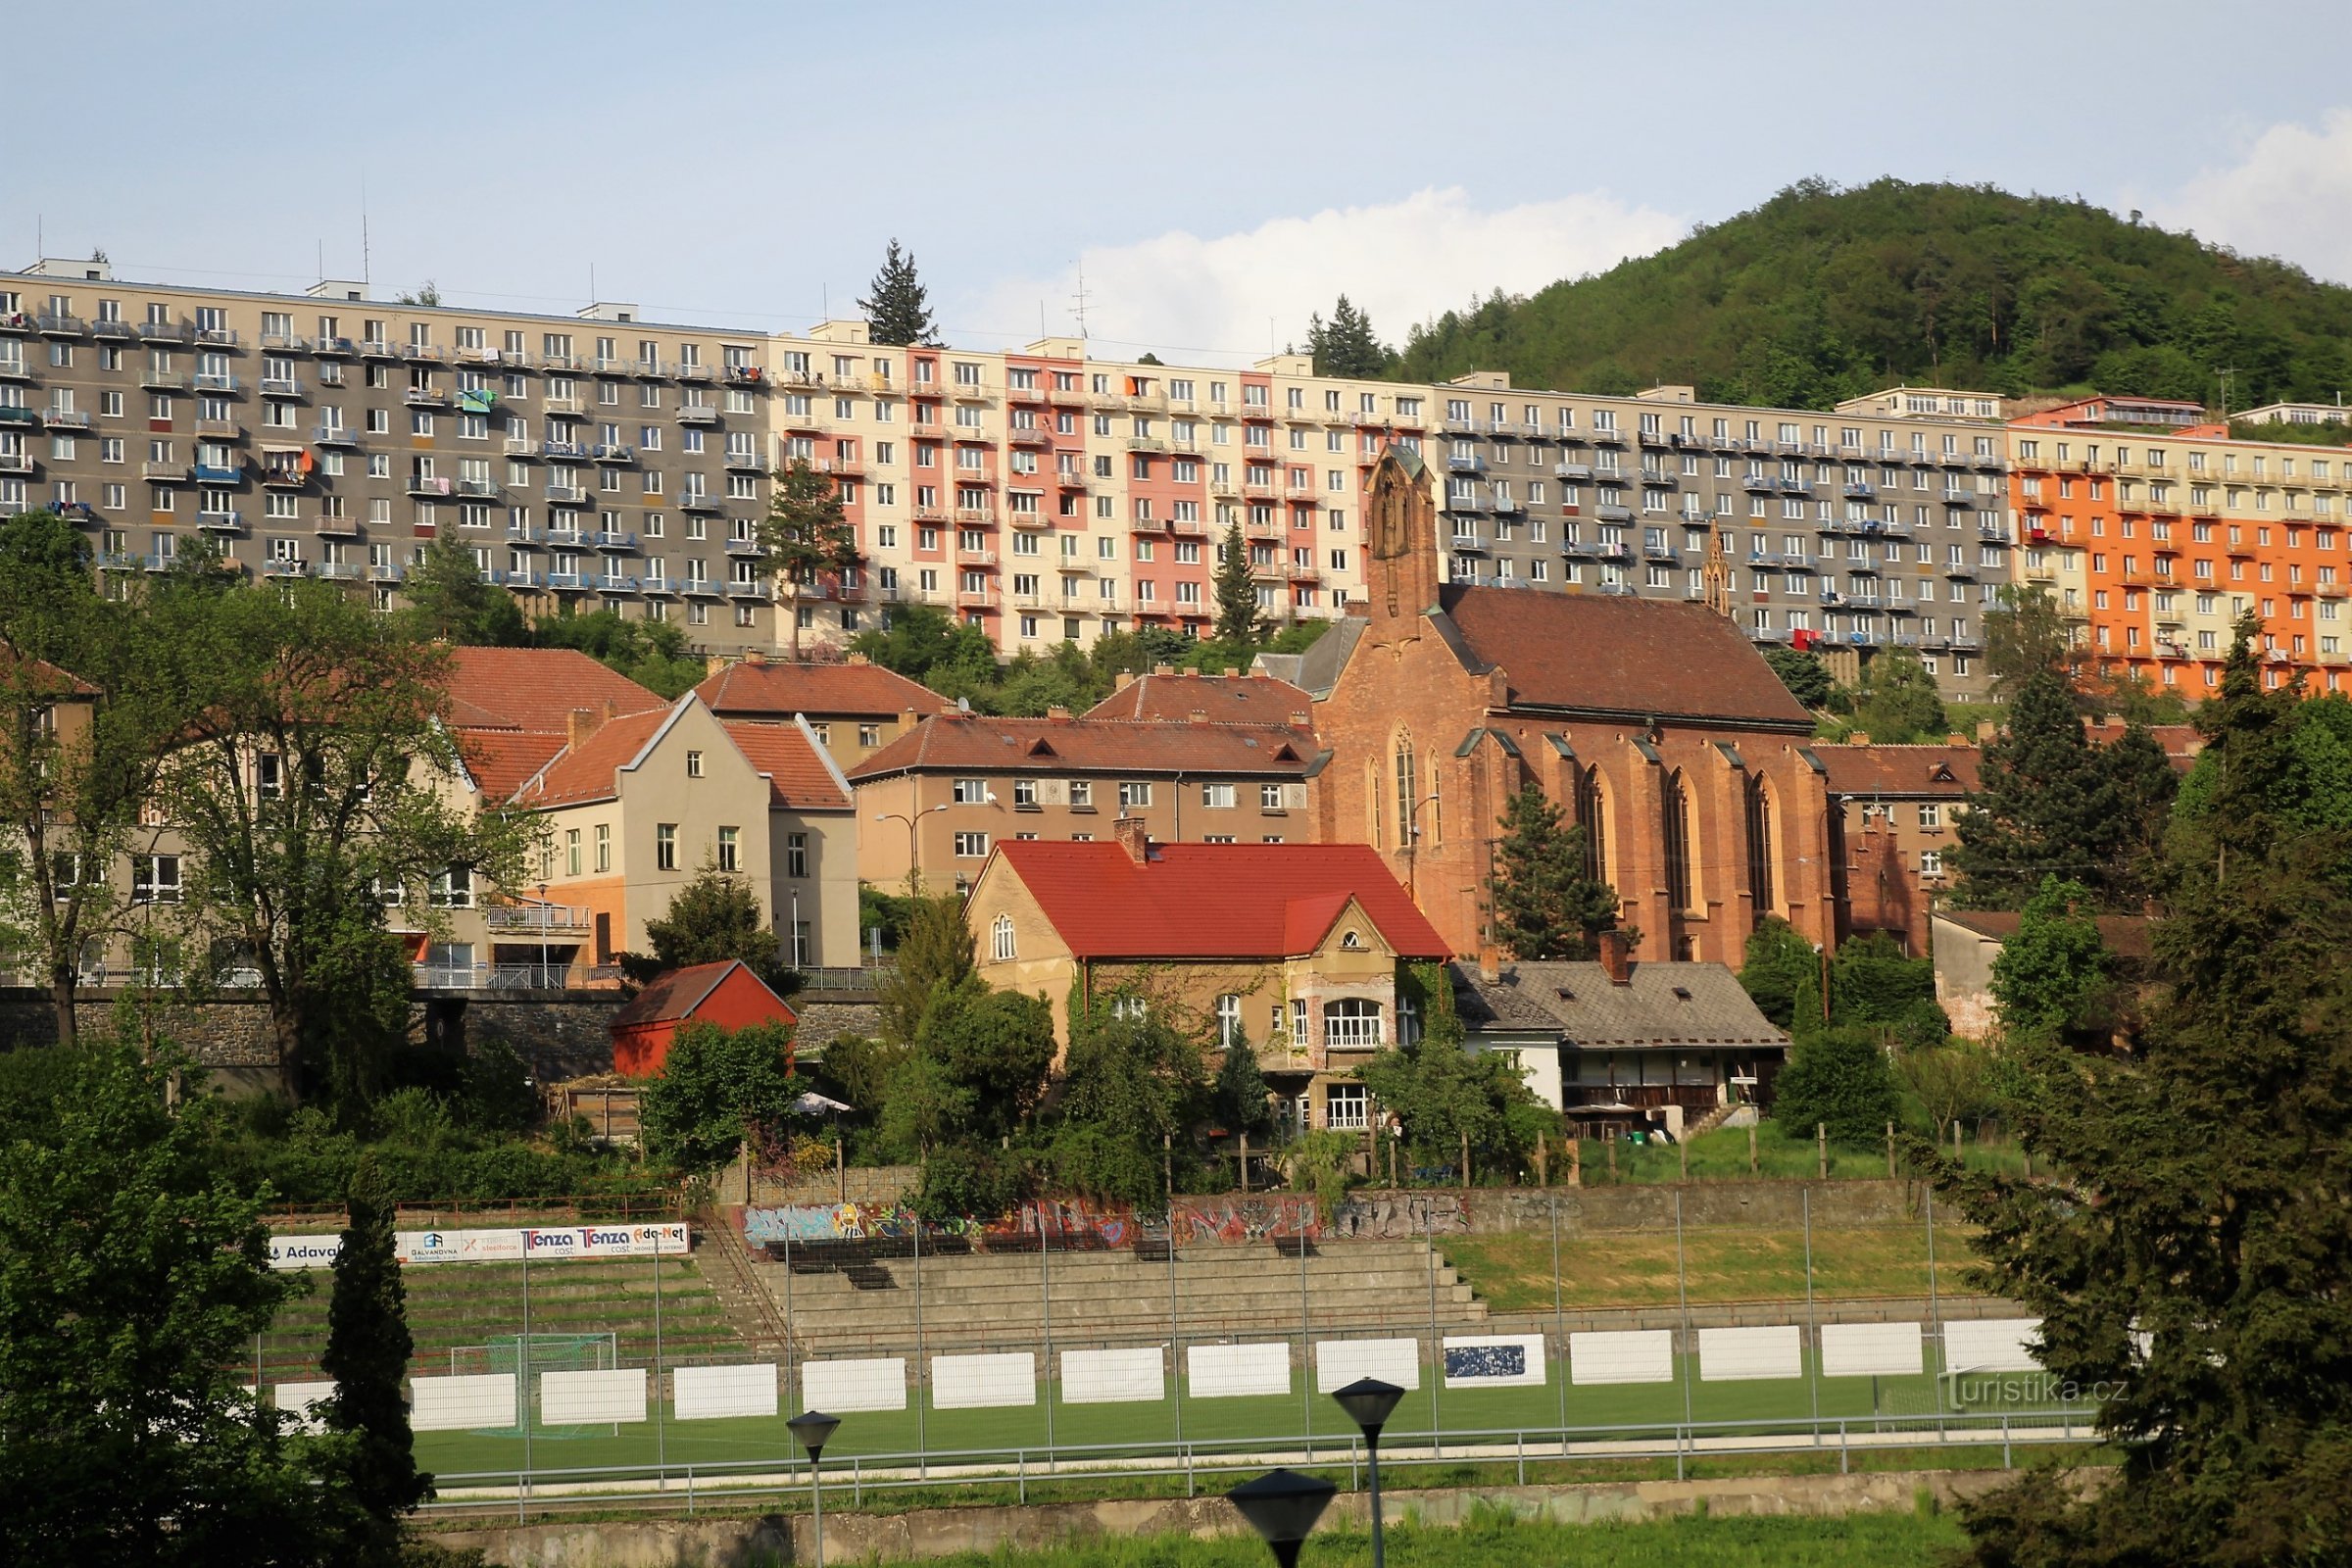 Pohled na panoráma bytového domu místními zvaného Hradčany, nad ním vršek kopce 